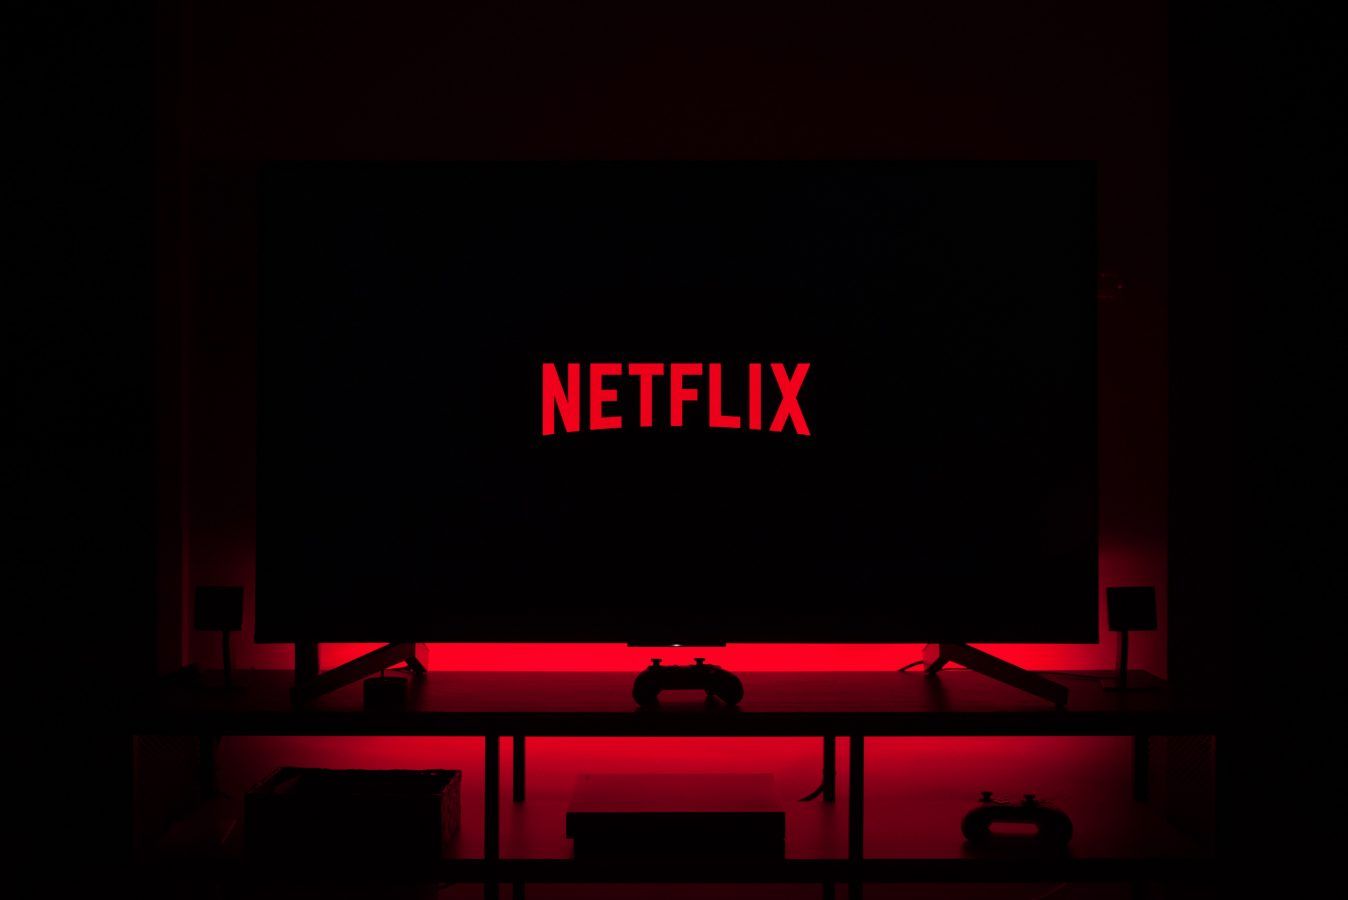 Netflix’s Tudum global fan event is returning in September